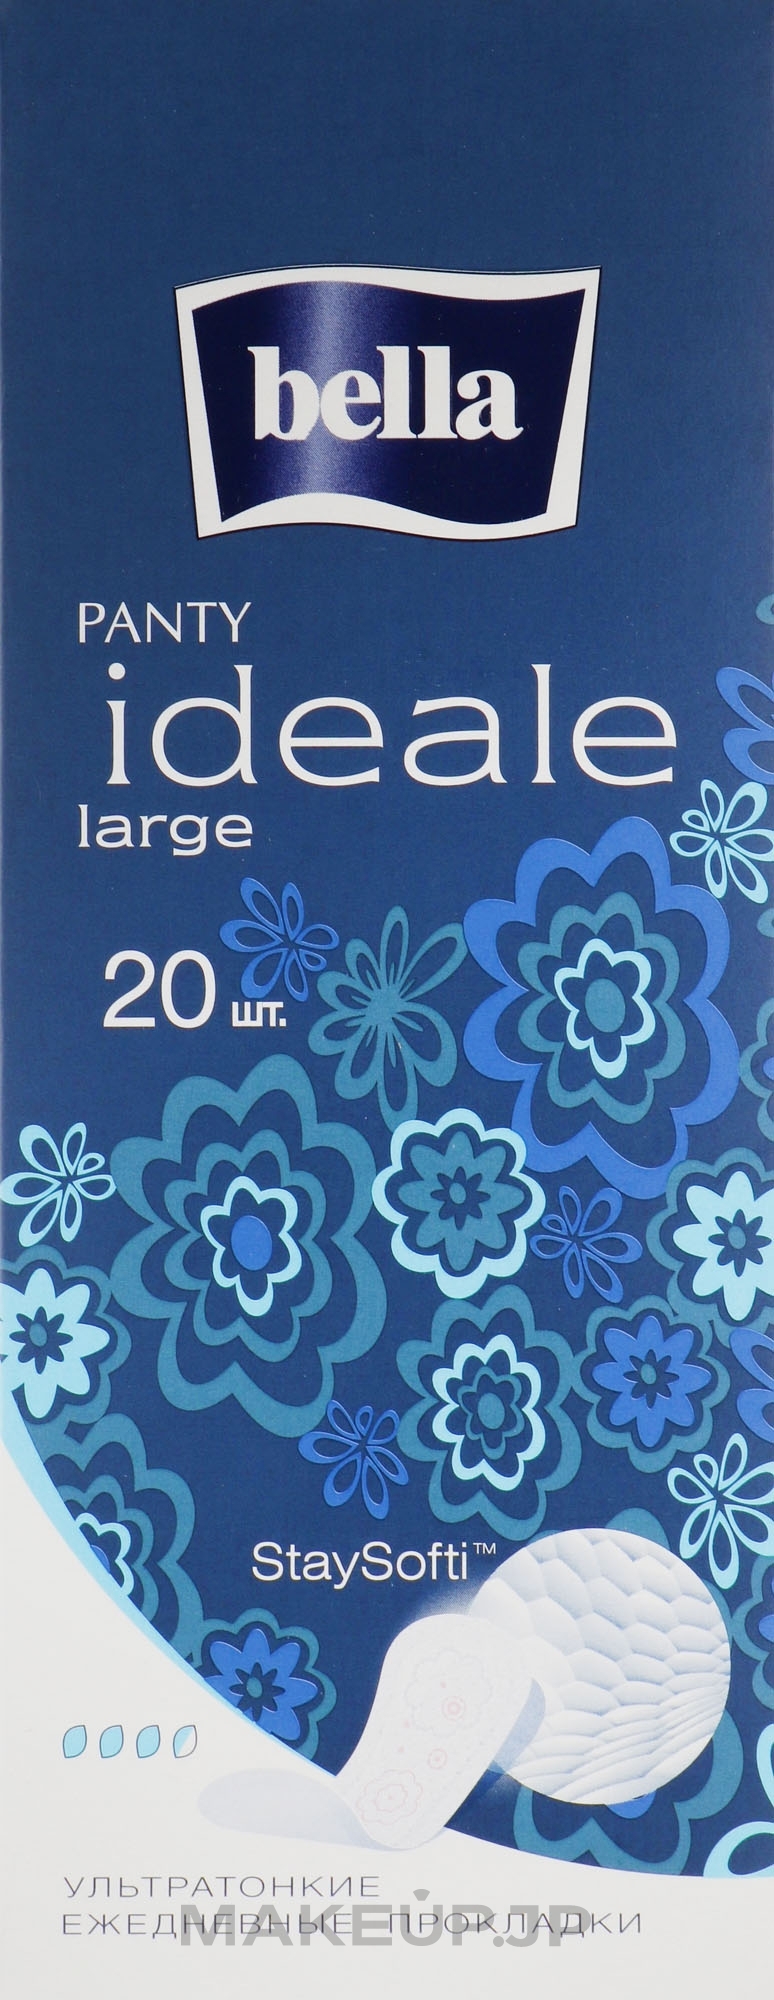 Daily Sanitary Pads Panty Ideale Ultra Thin Large Stay Softi, 20 pcs - Bella — photo 20 szt.